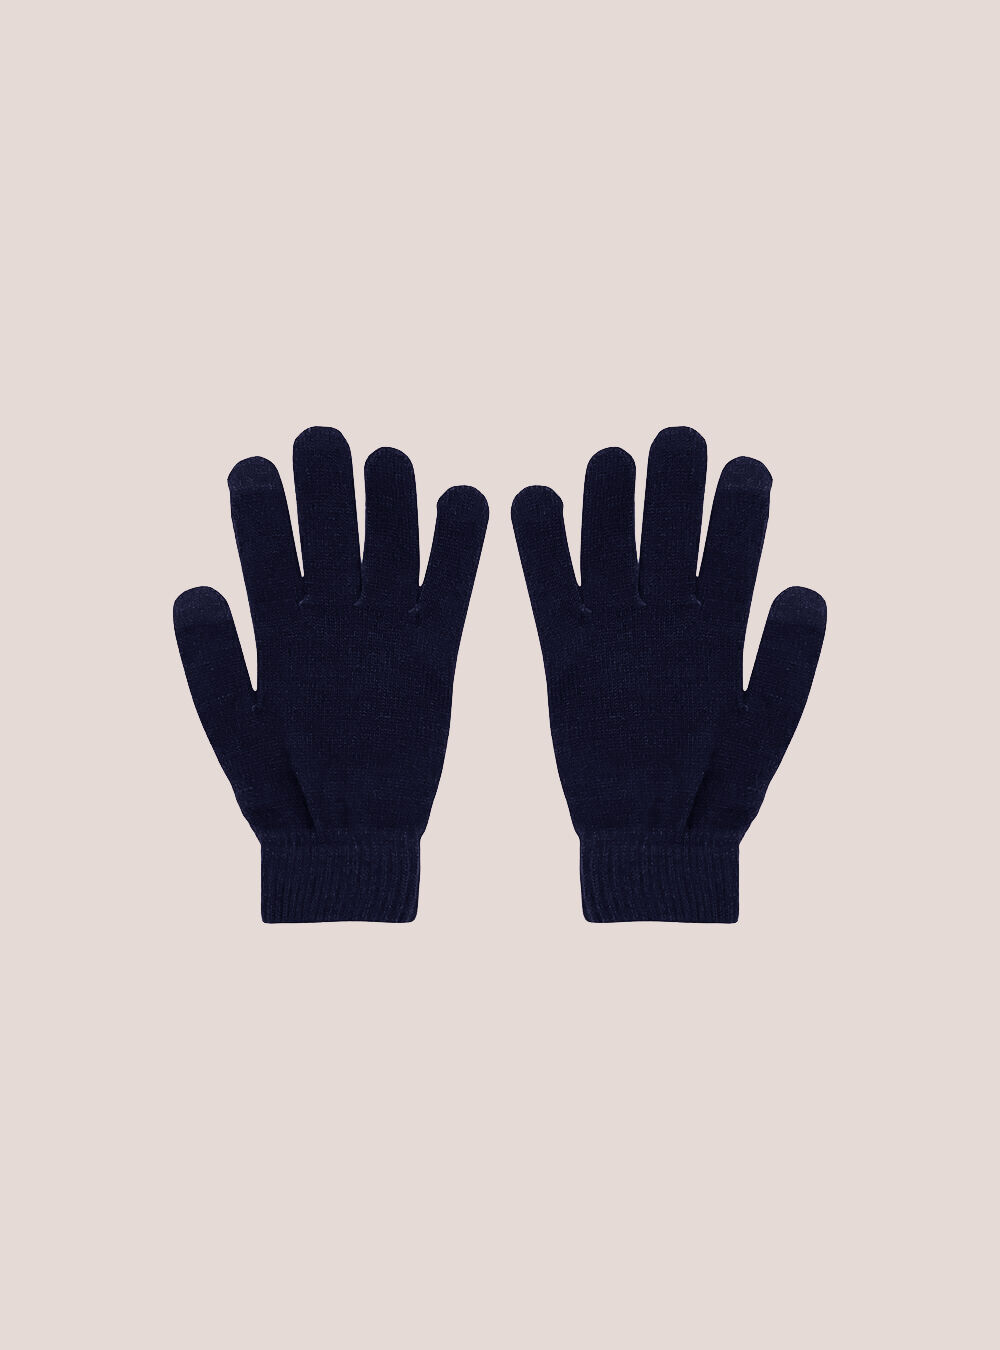 Handschuhe C210 Blue Navy Alcott Preis Guanti Touch Screen Männer – 2